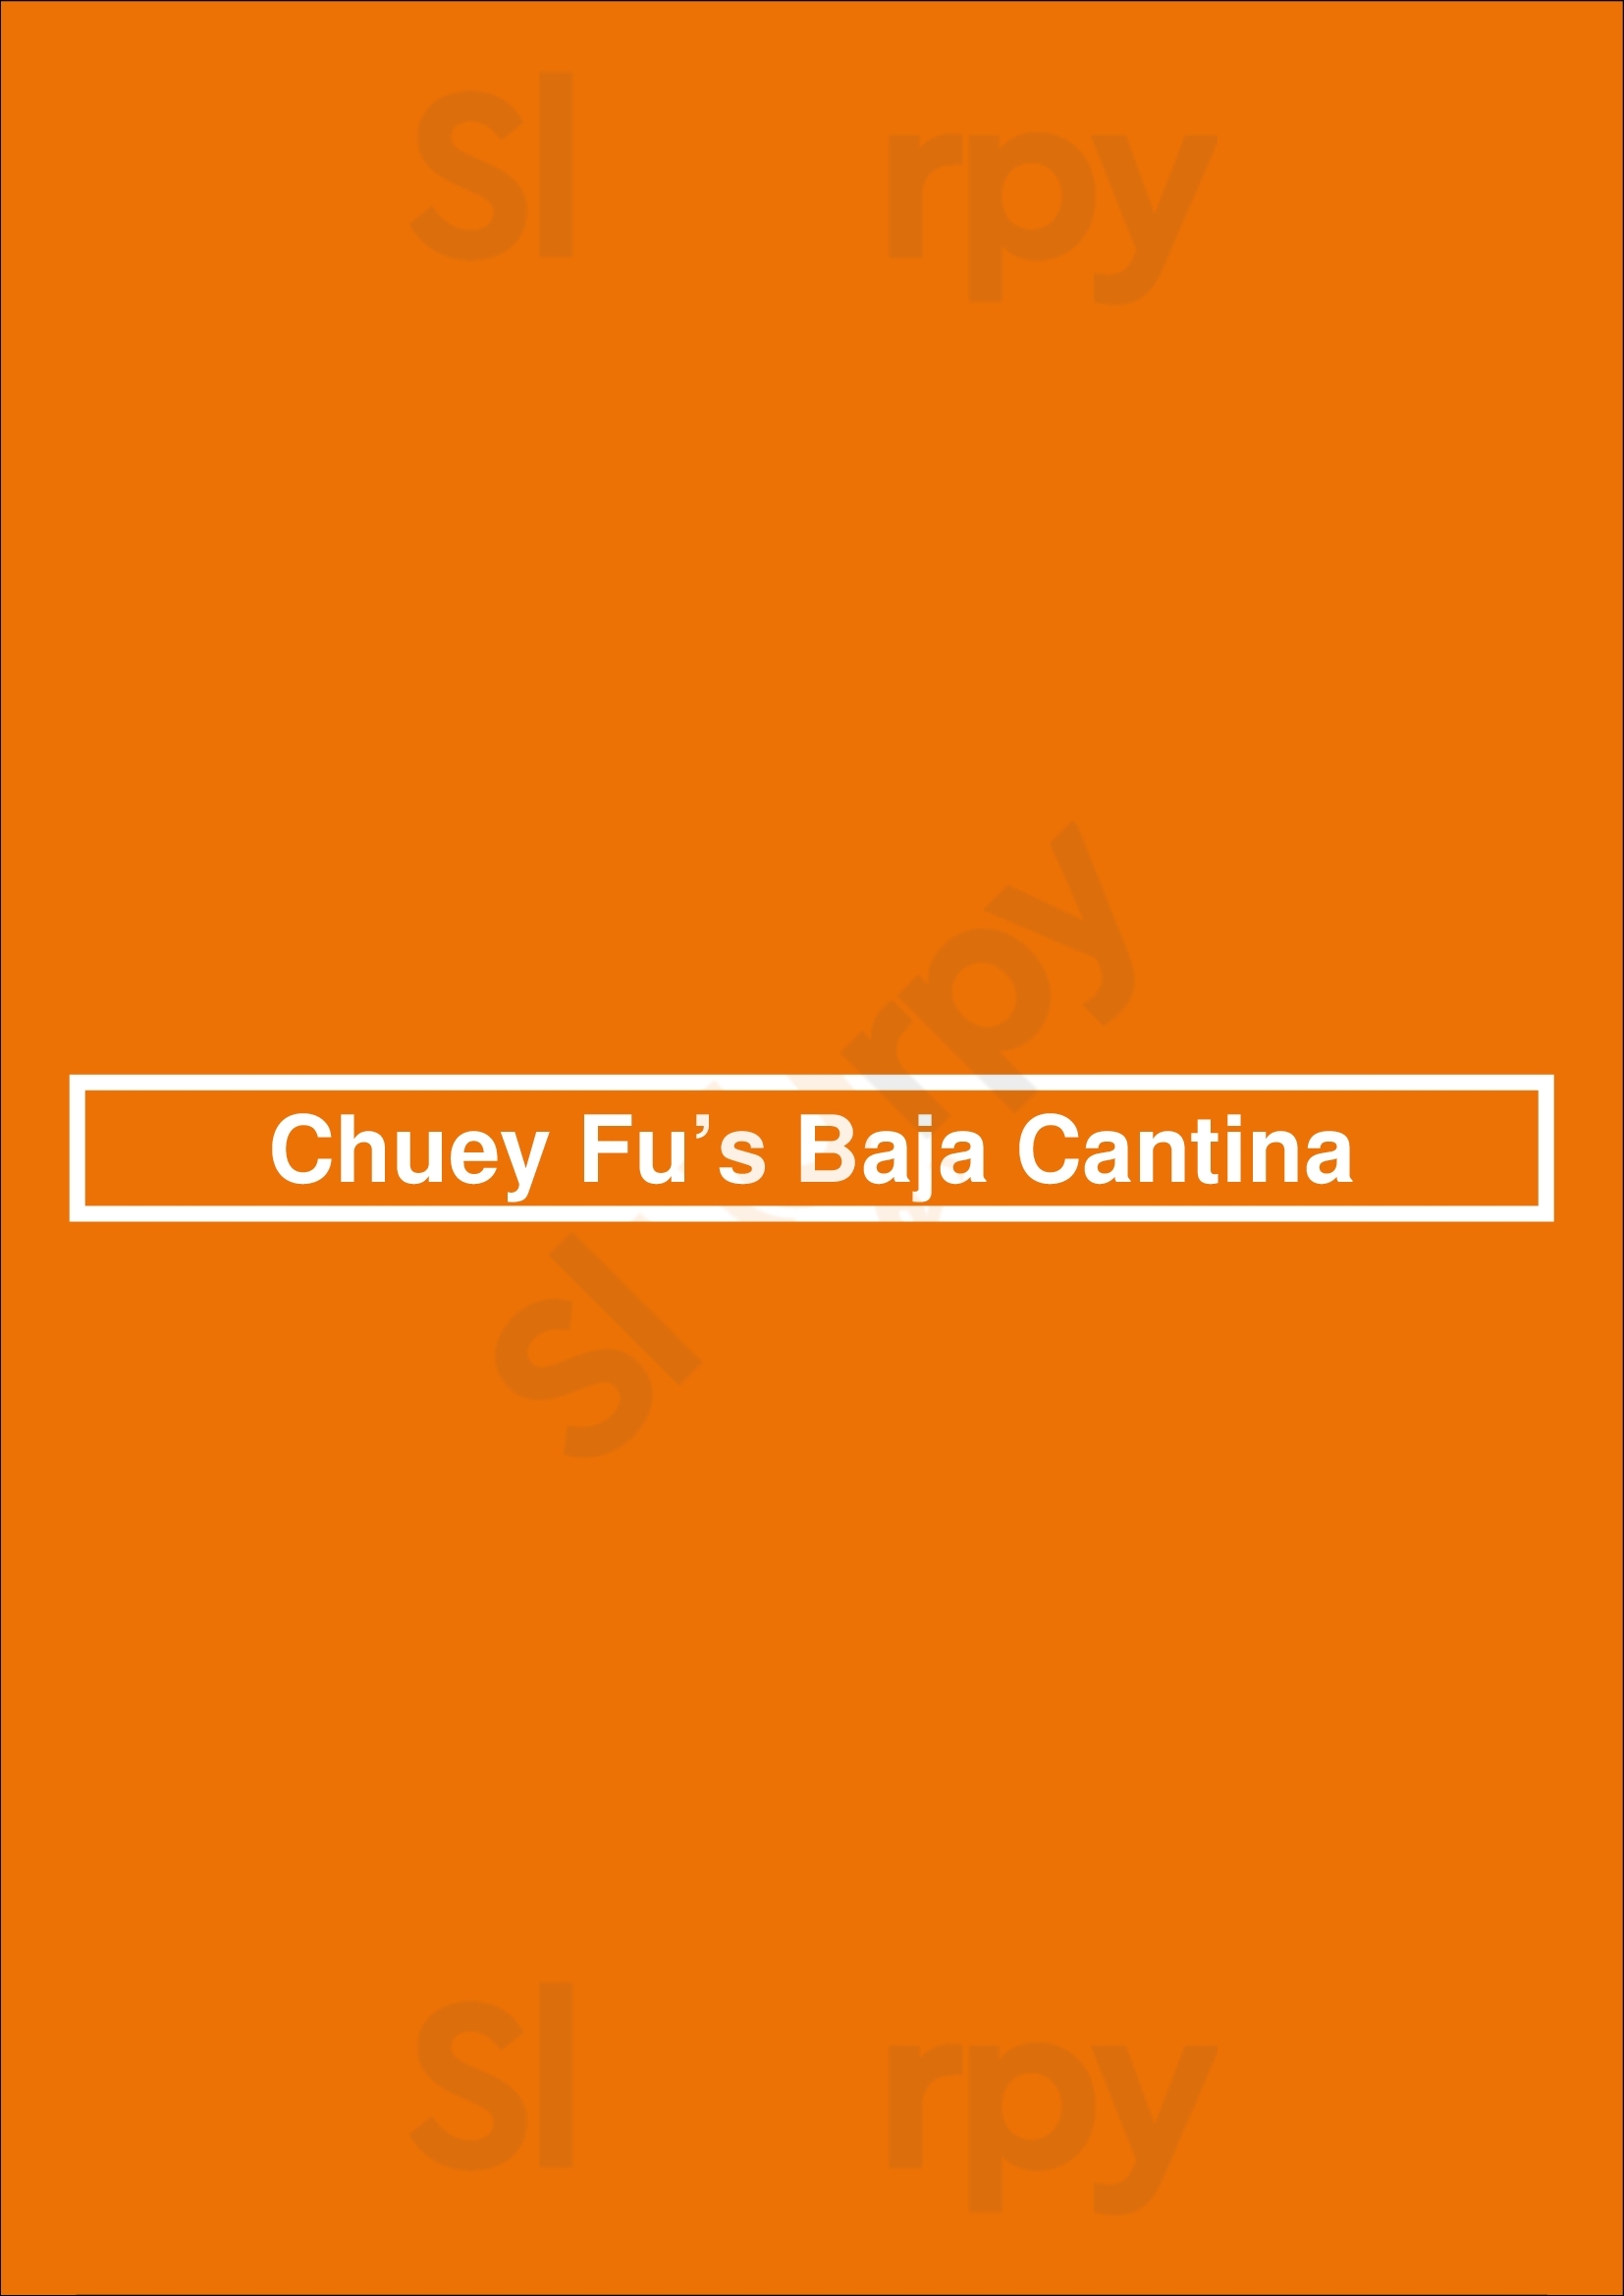 Chuey Fu’s Baja Cantina Denver Menu - 1